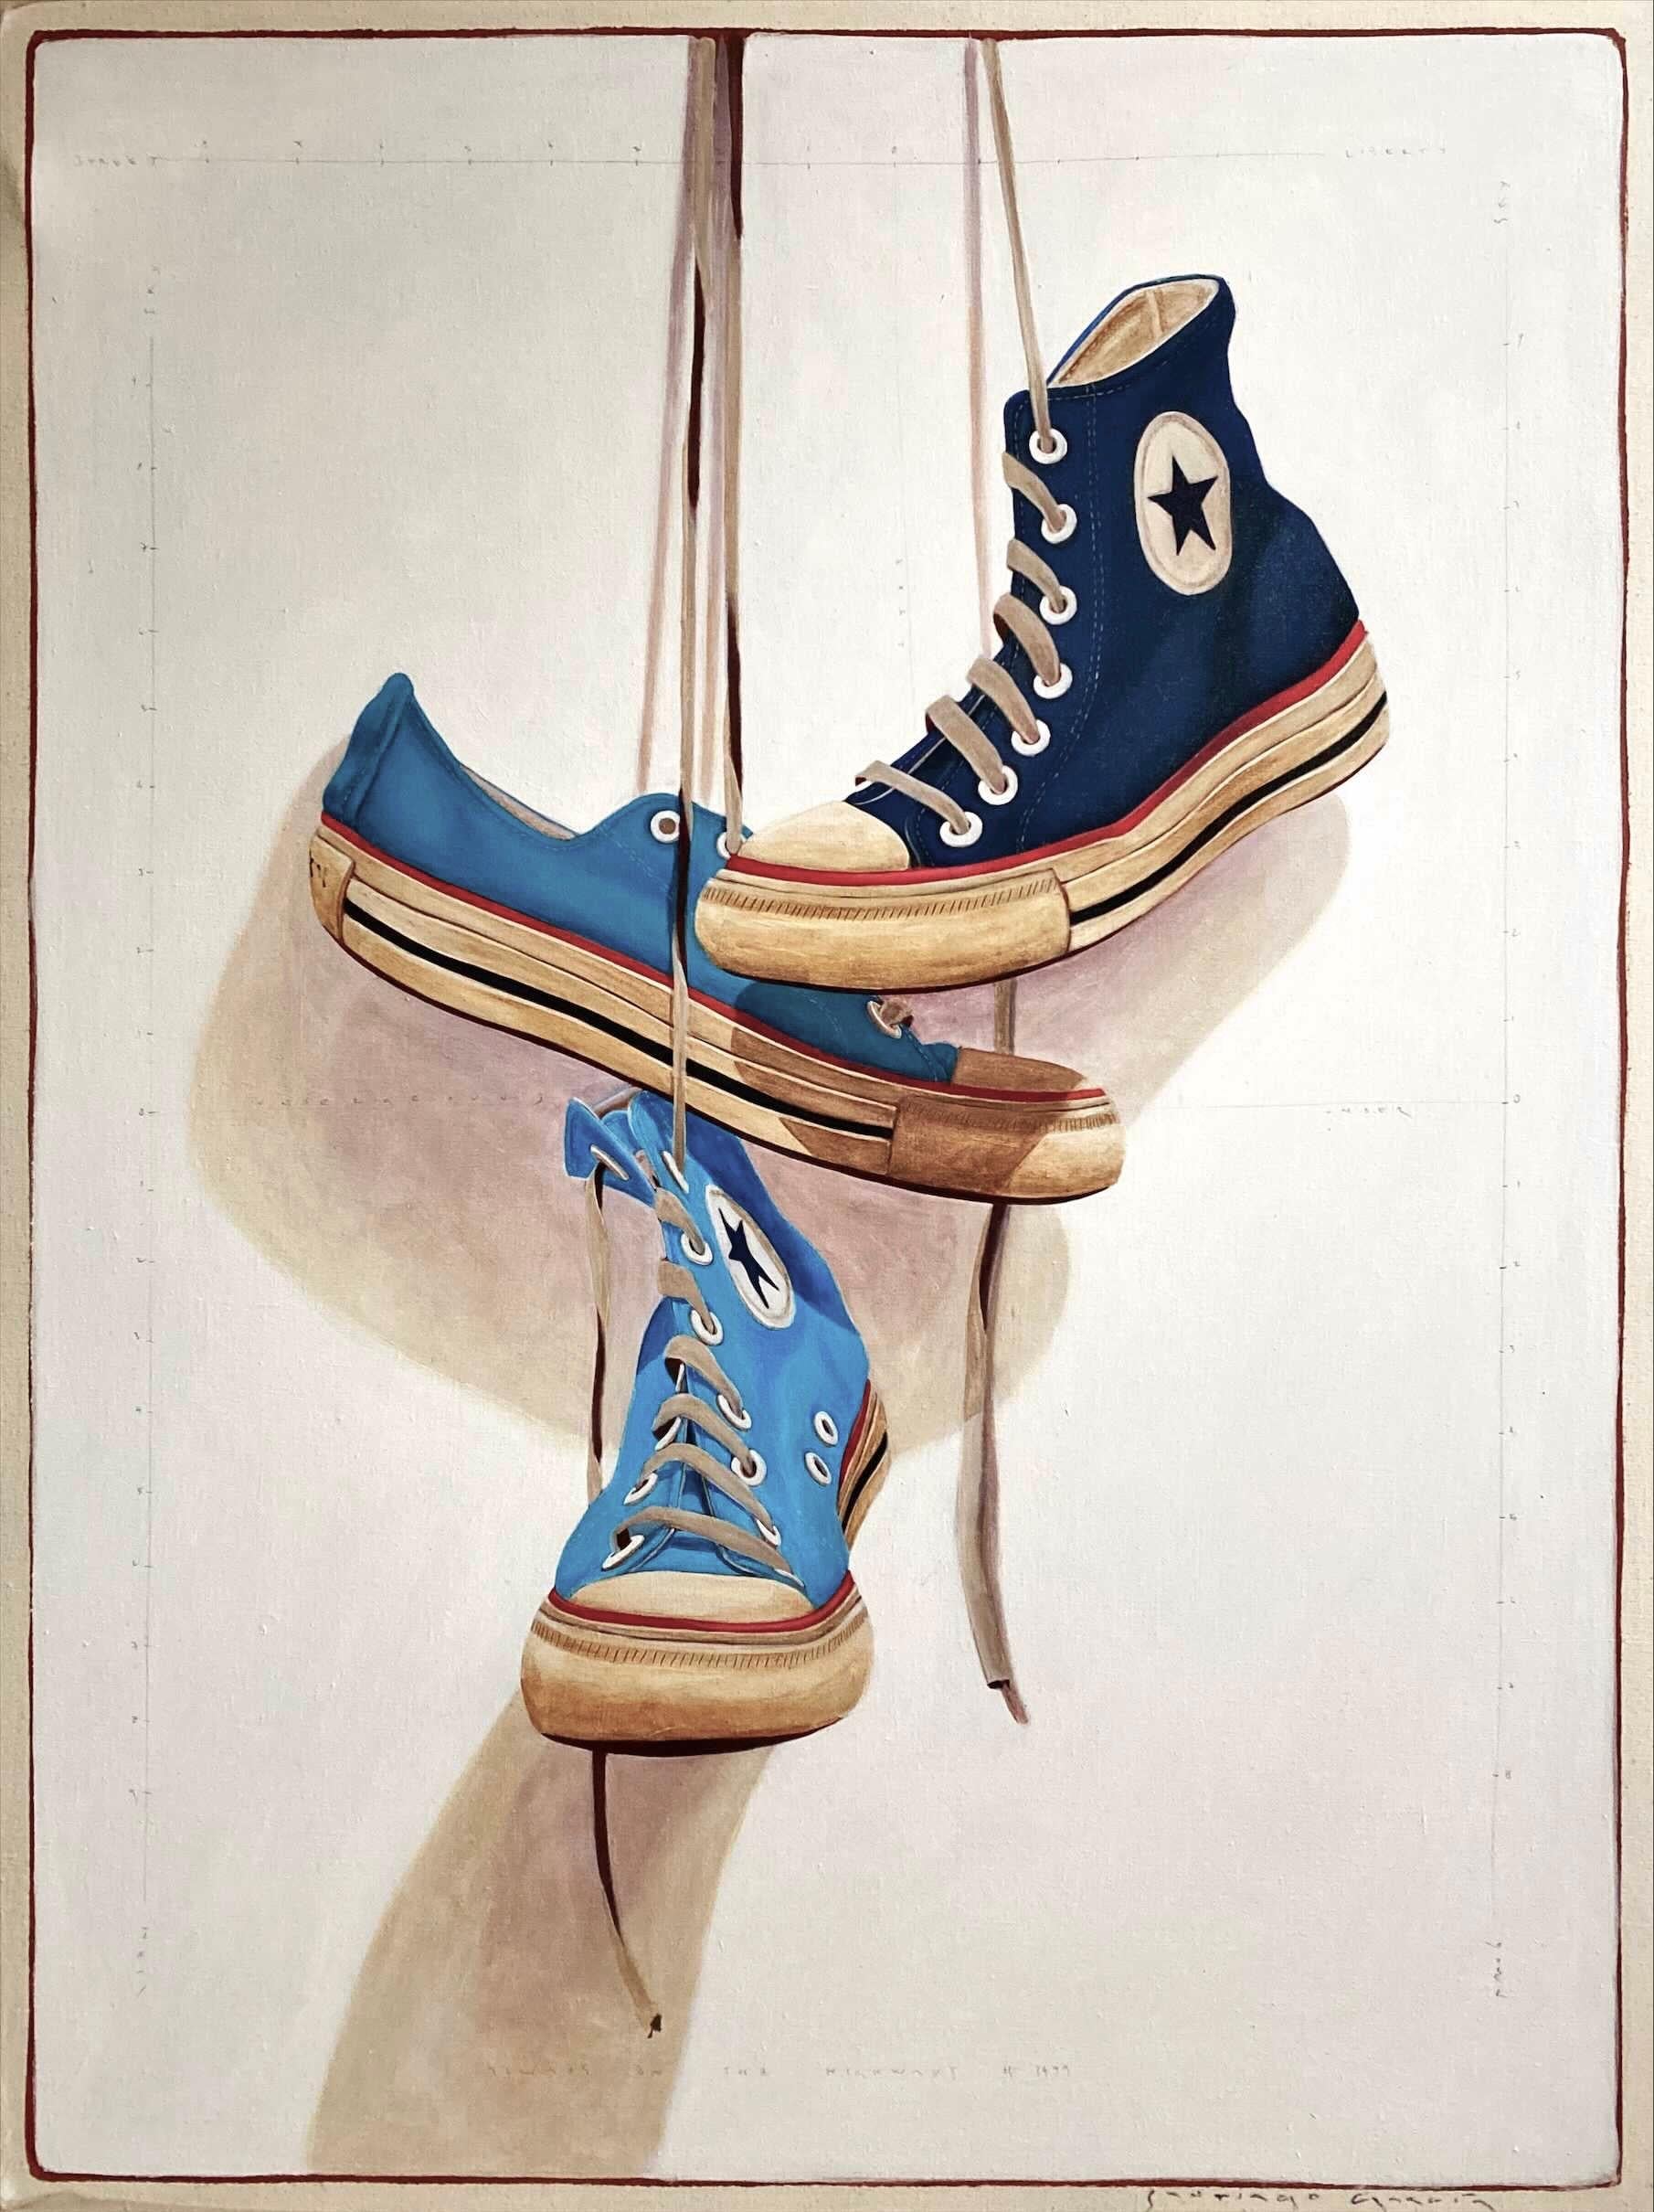 Santiago Garcia Still-Life Painting – Fotorealistisches Ölgemälde ""#1499", auf dem drei blaue, umgekehrte Turnschuhe hängen